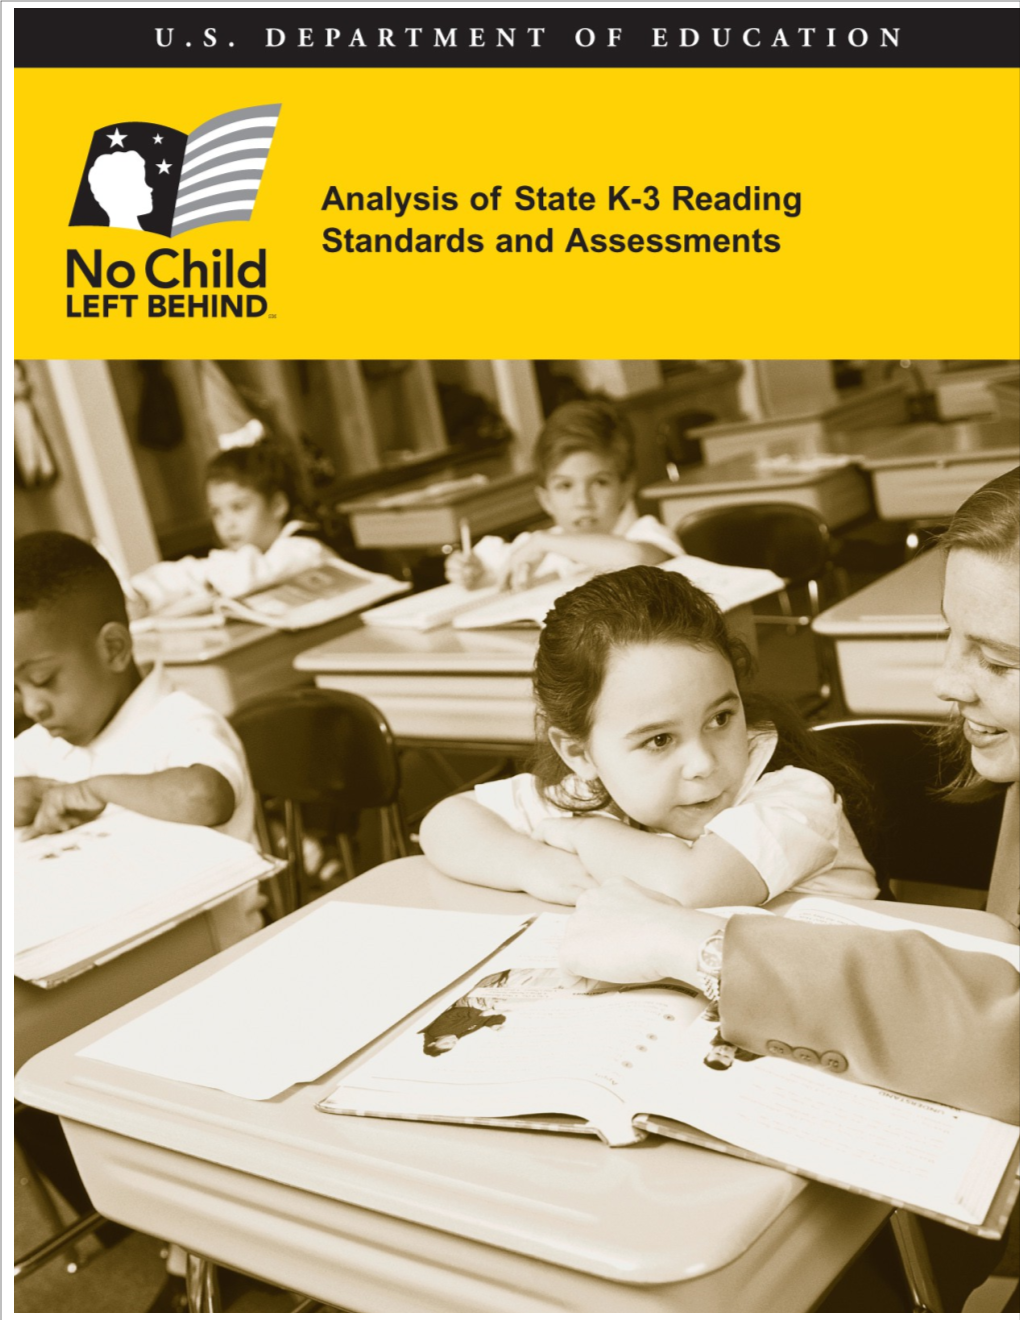 Analysis of State K-3 Reading